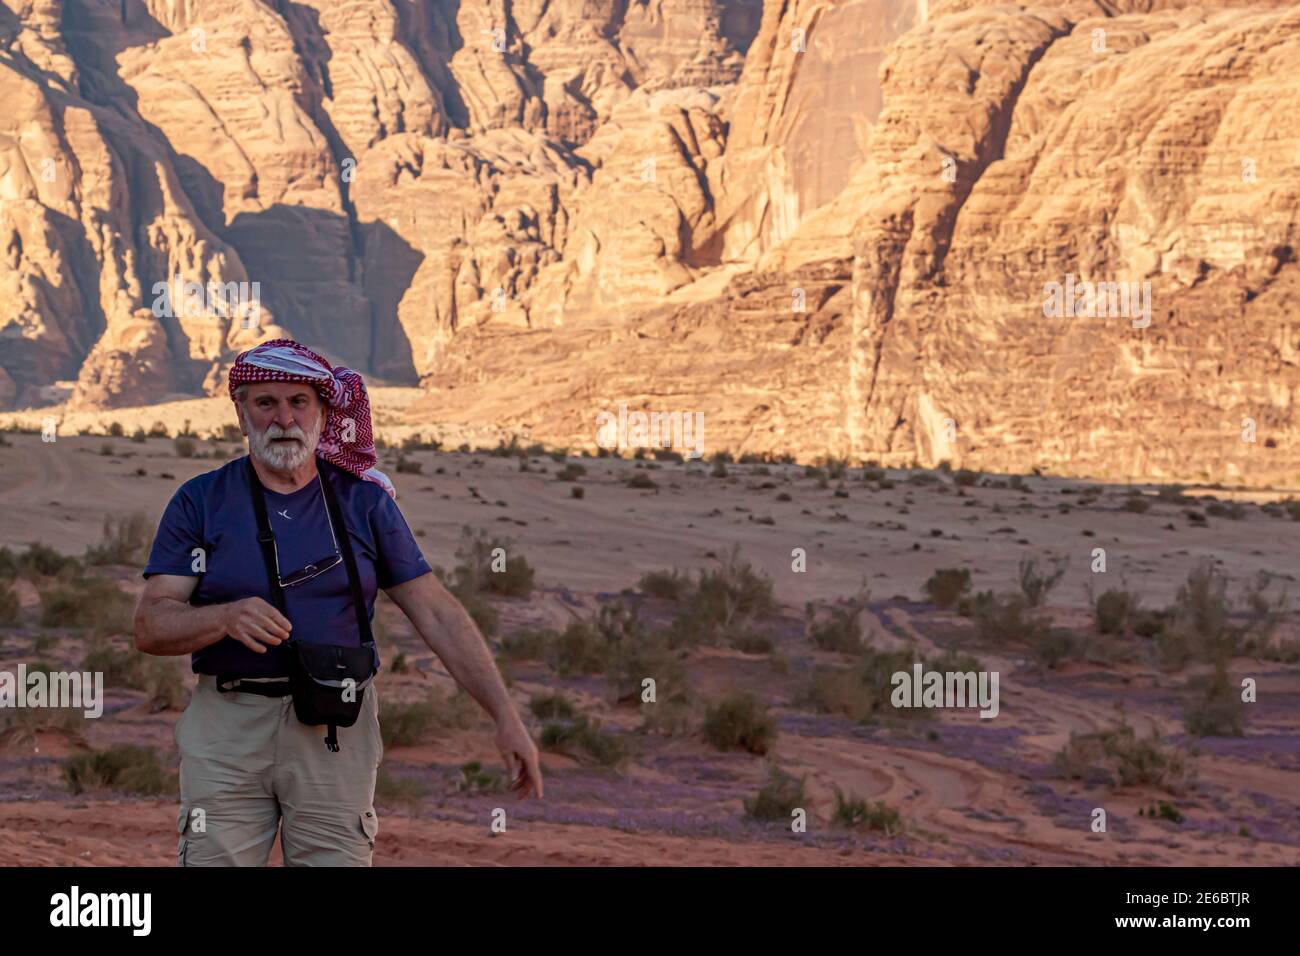 Wadi Rum Desert, Jordanien 03.31.2010: Ein älterer männlicher kaukasischer Tourist, der traditionelle jordanische Keffiyeh-Kopfwickel trägt, wandert allein in der Wüste. Stockfoto